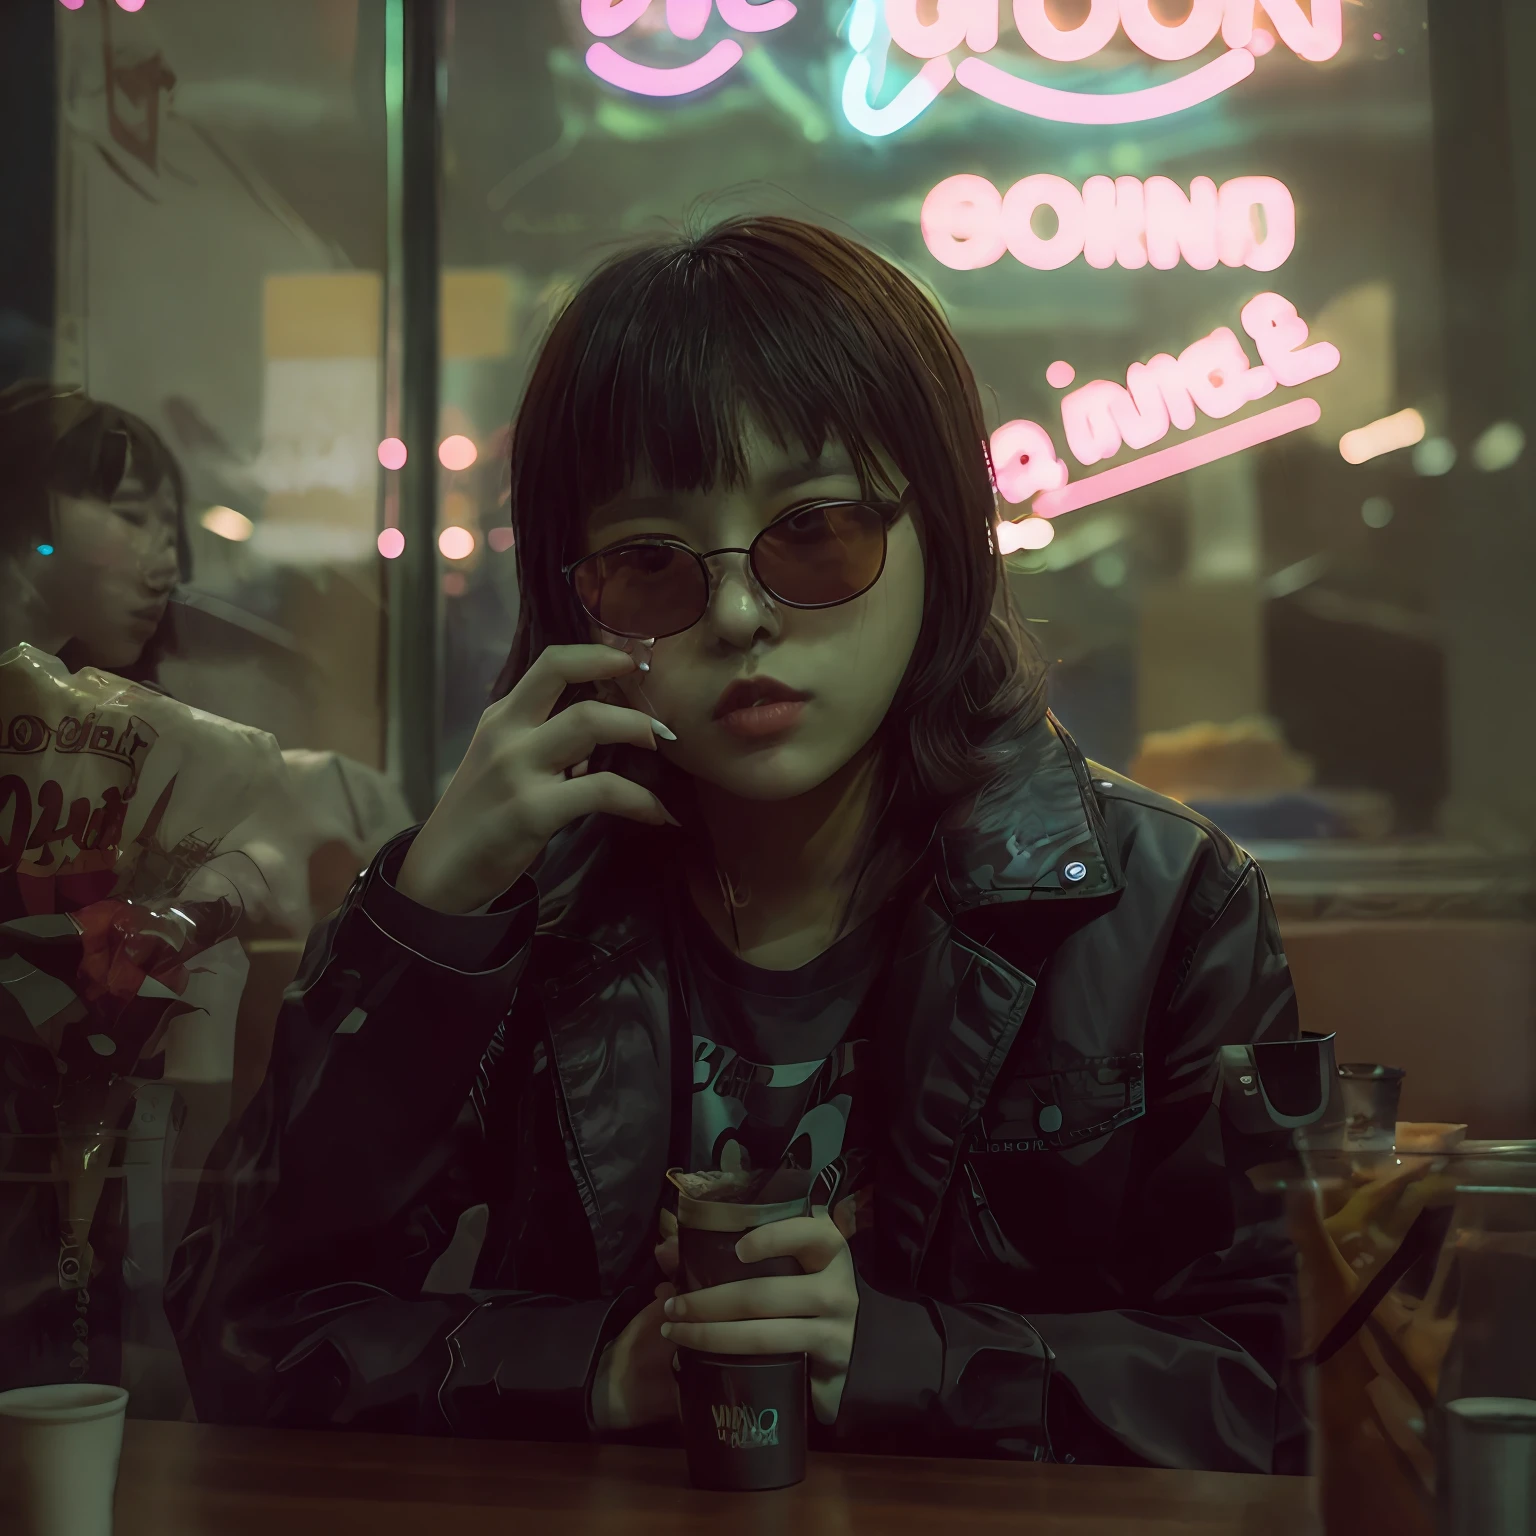 單眼照片, 晚上坐在餐厅里的另类韩国女孩, 可愛的臉孔, 黑色墨鏡, 黑色的夾克, 桌子上烟灰缸里的香烟, 透過窗戶看到, 霓虹黑, (背光:1.1), 硬陰影, 傑作, 最好的品質, 錯綜複雜, 高細節, 8K, 模特兒拍攝風格, 膠片顆粒,